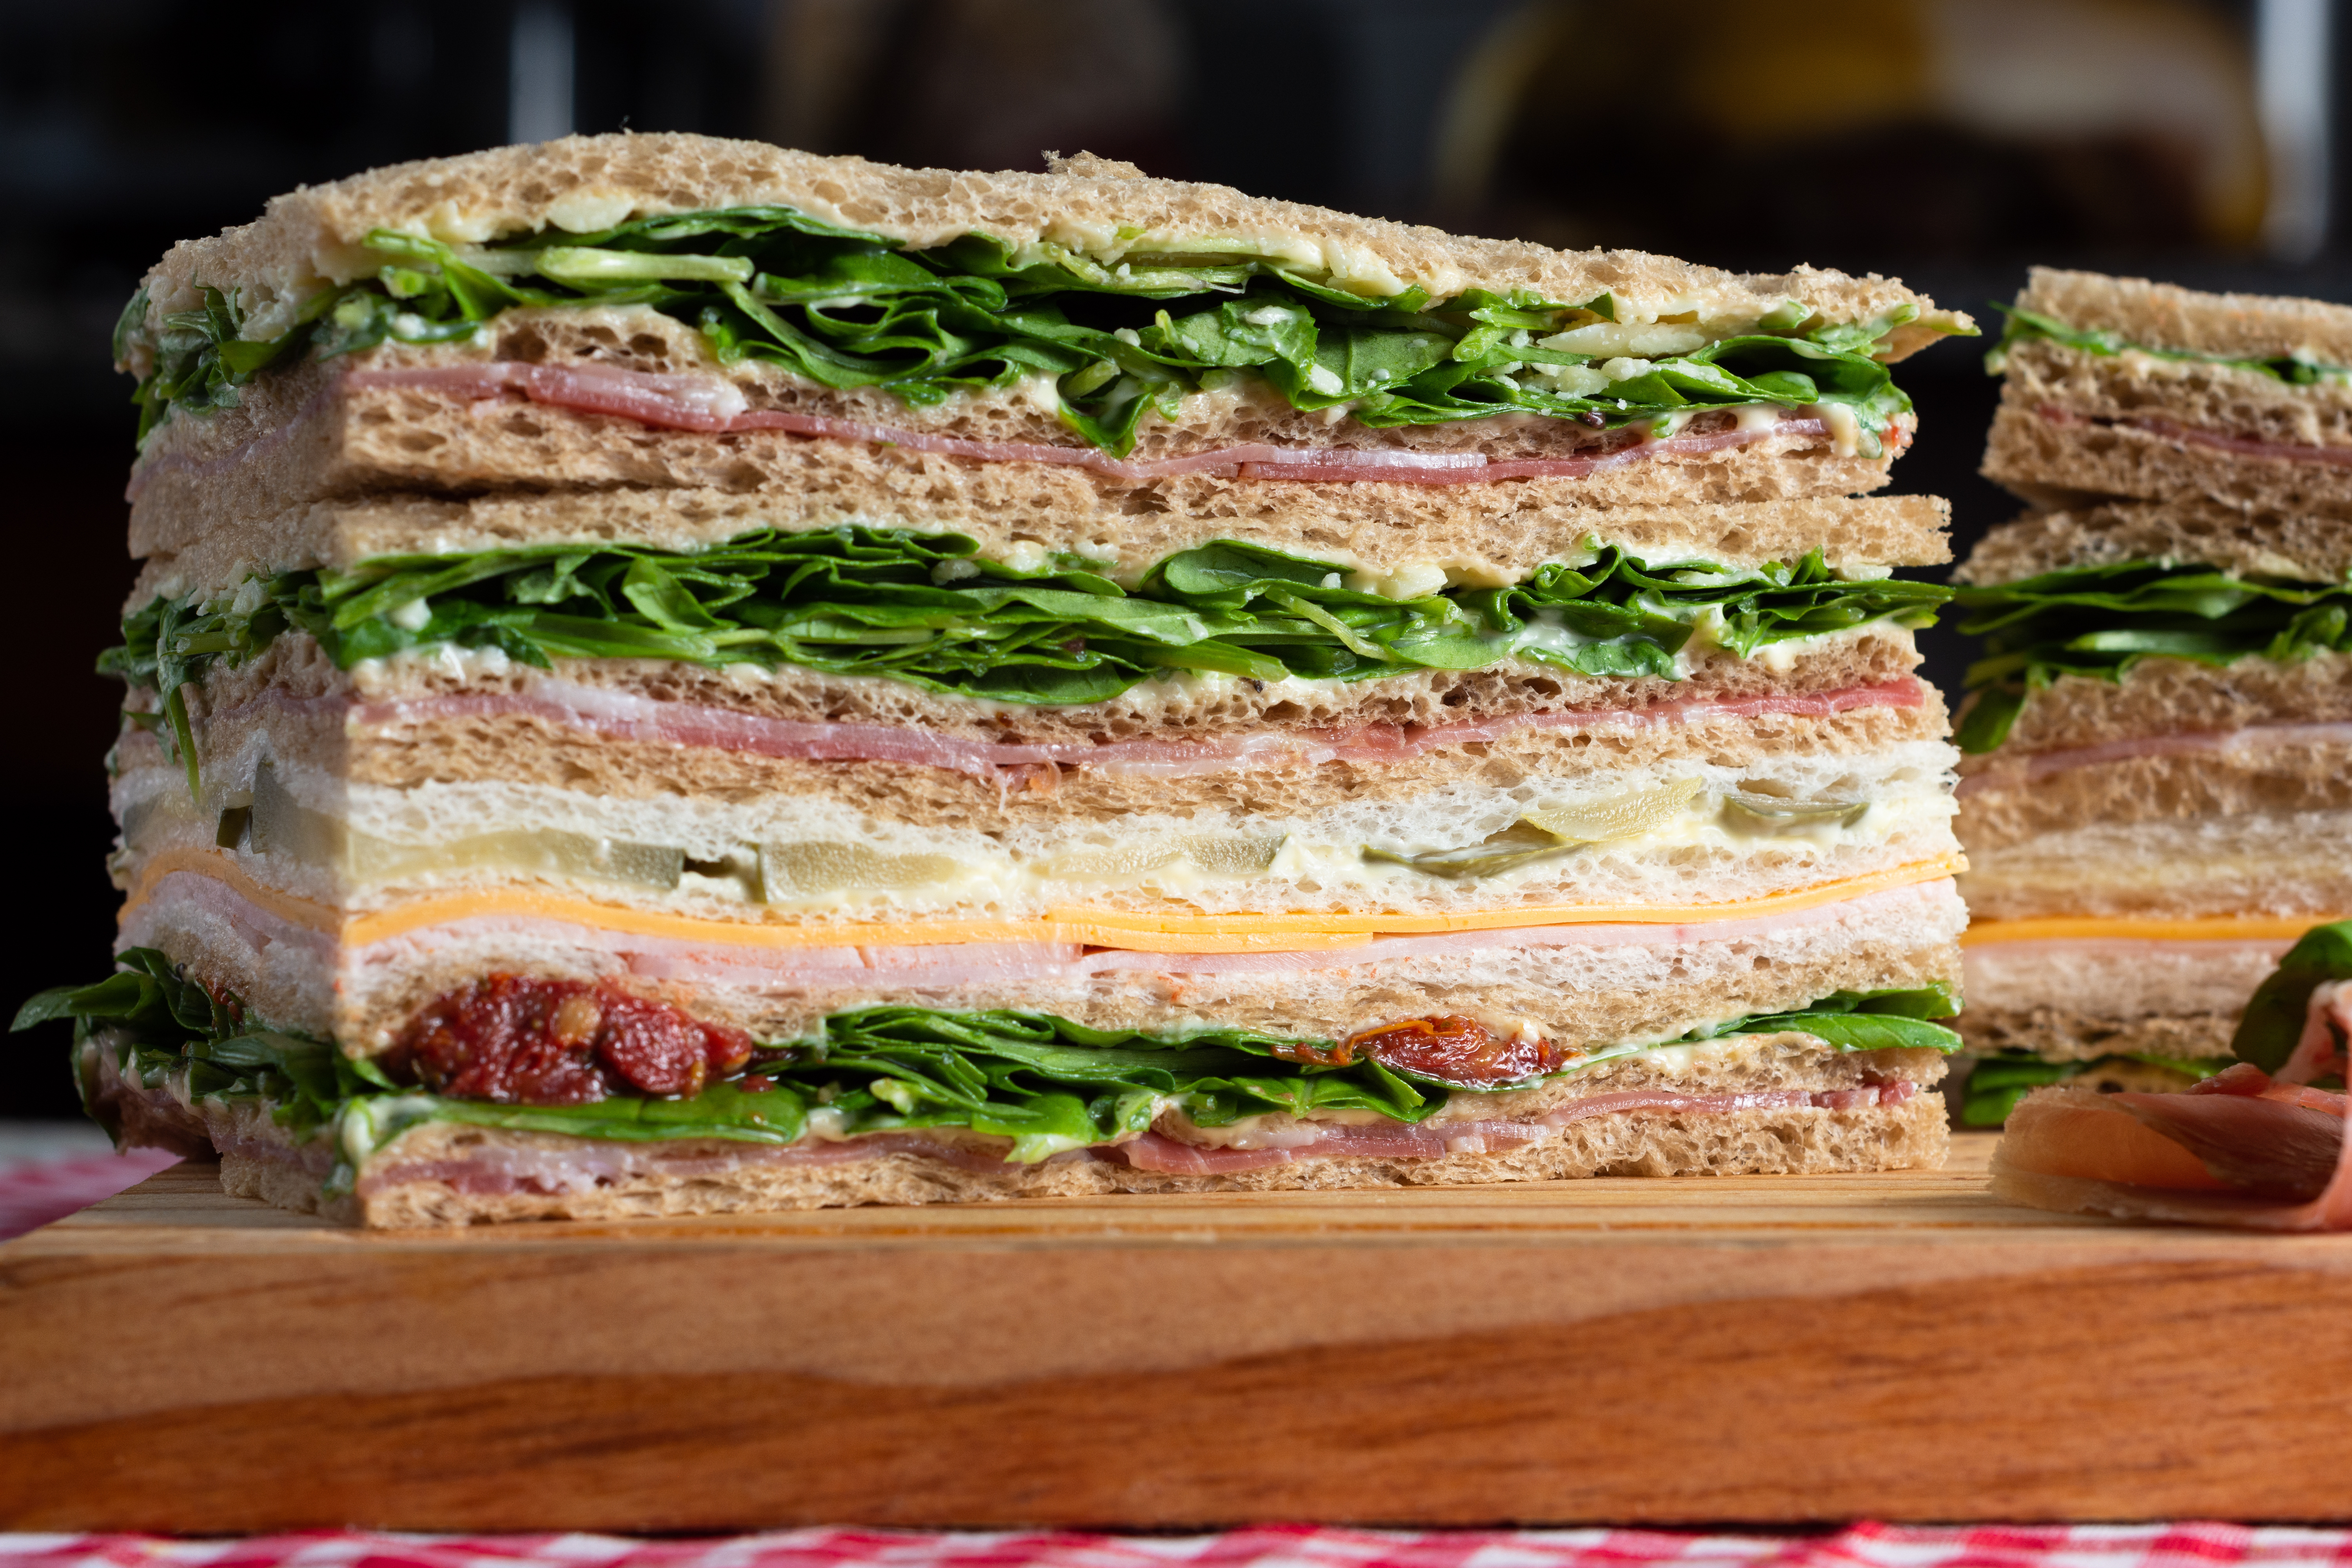 El sándwich de miga, un favorito no tan nuestro | TN